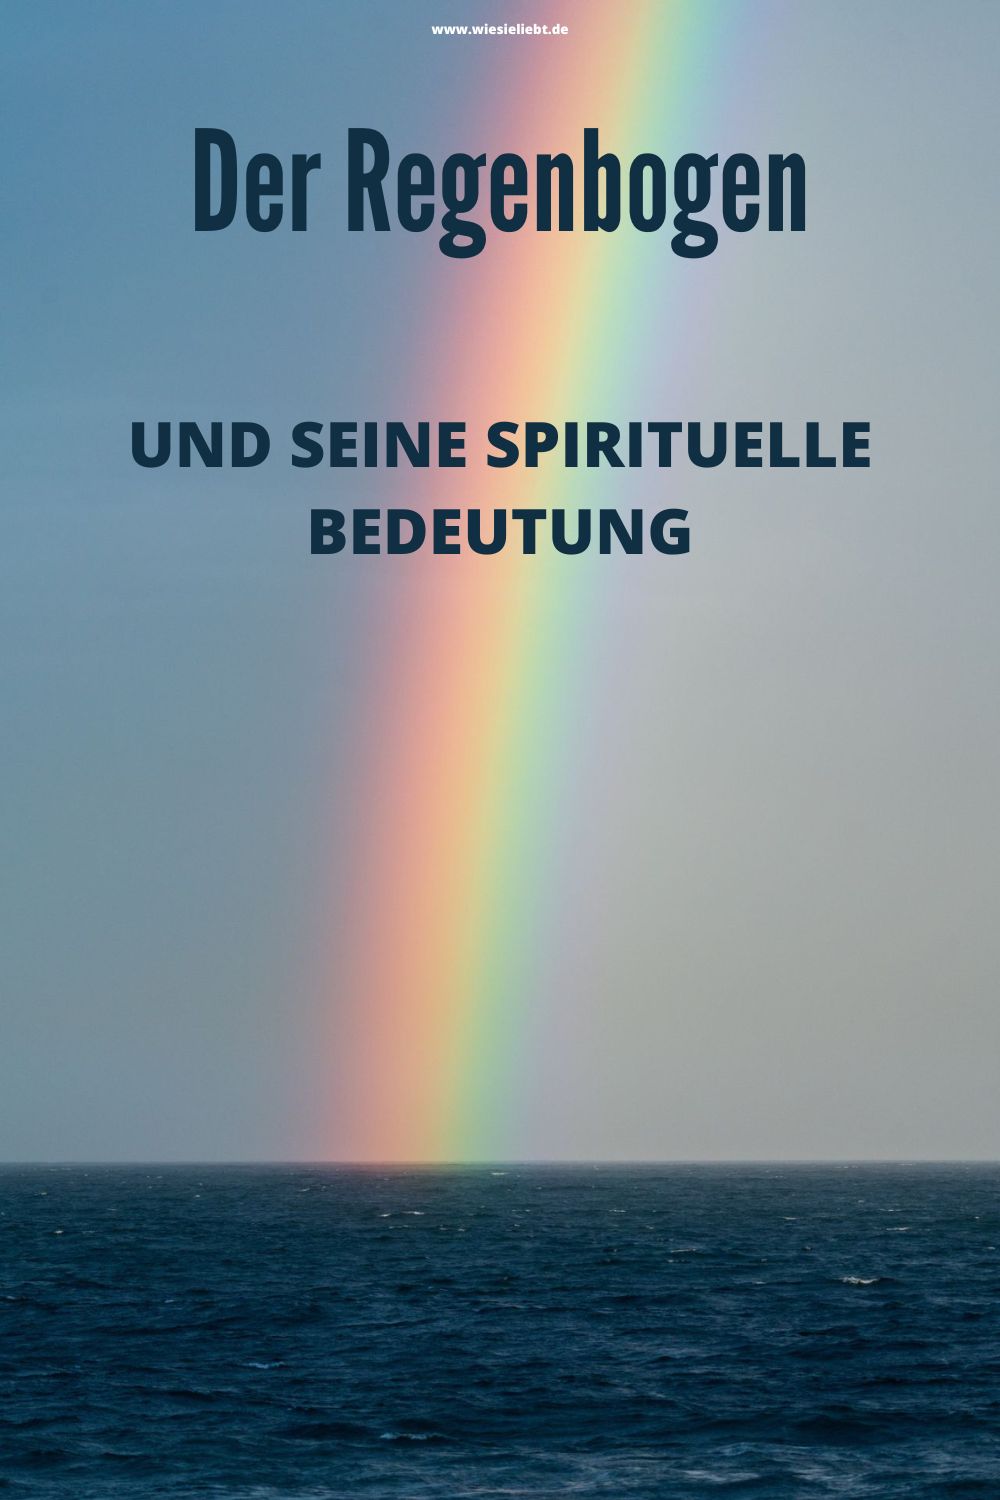 Der-Regenbogen-und-seine-spirituelle-Bedeutung